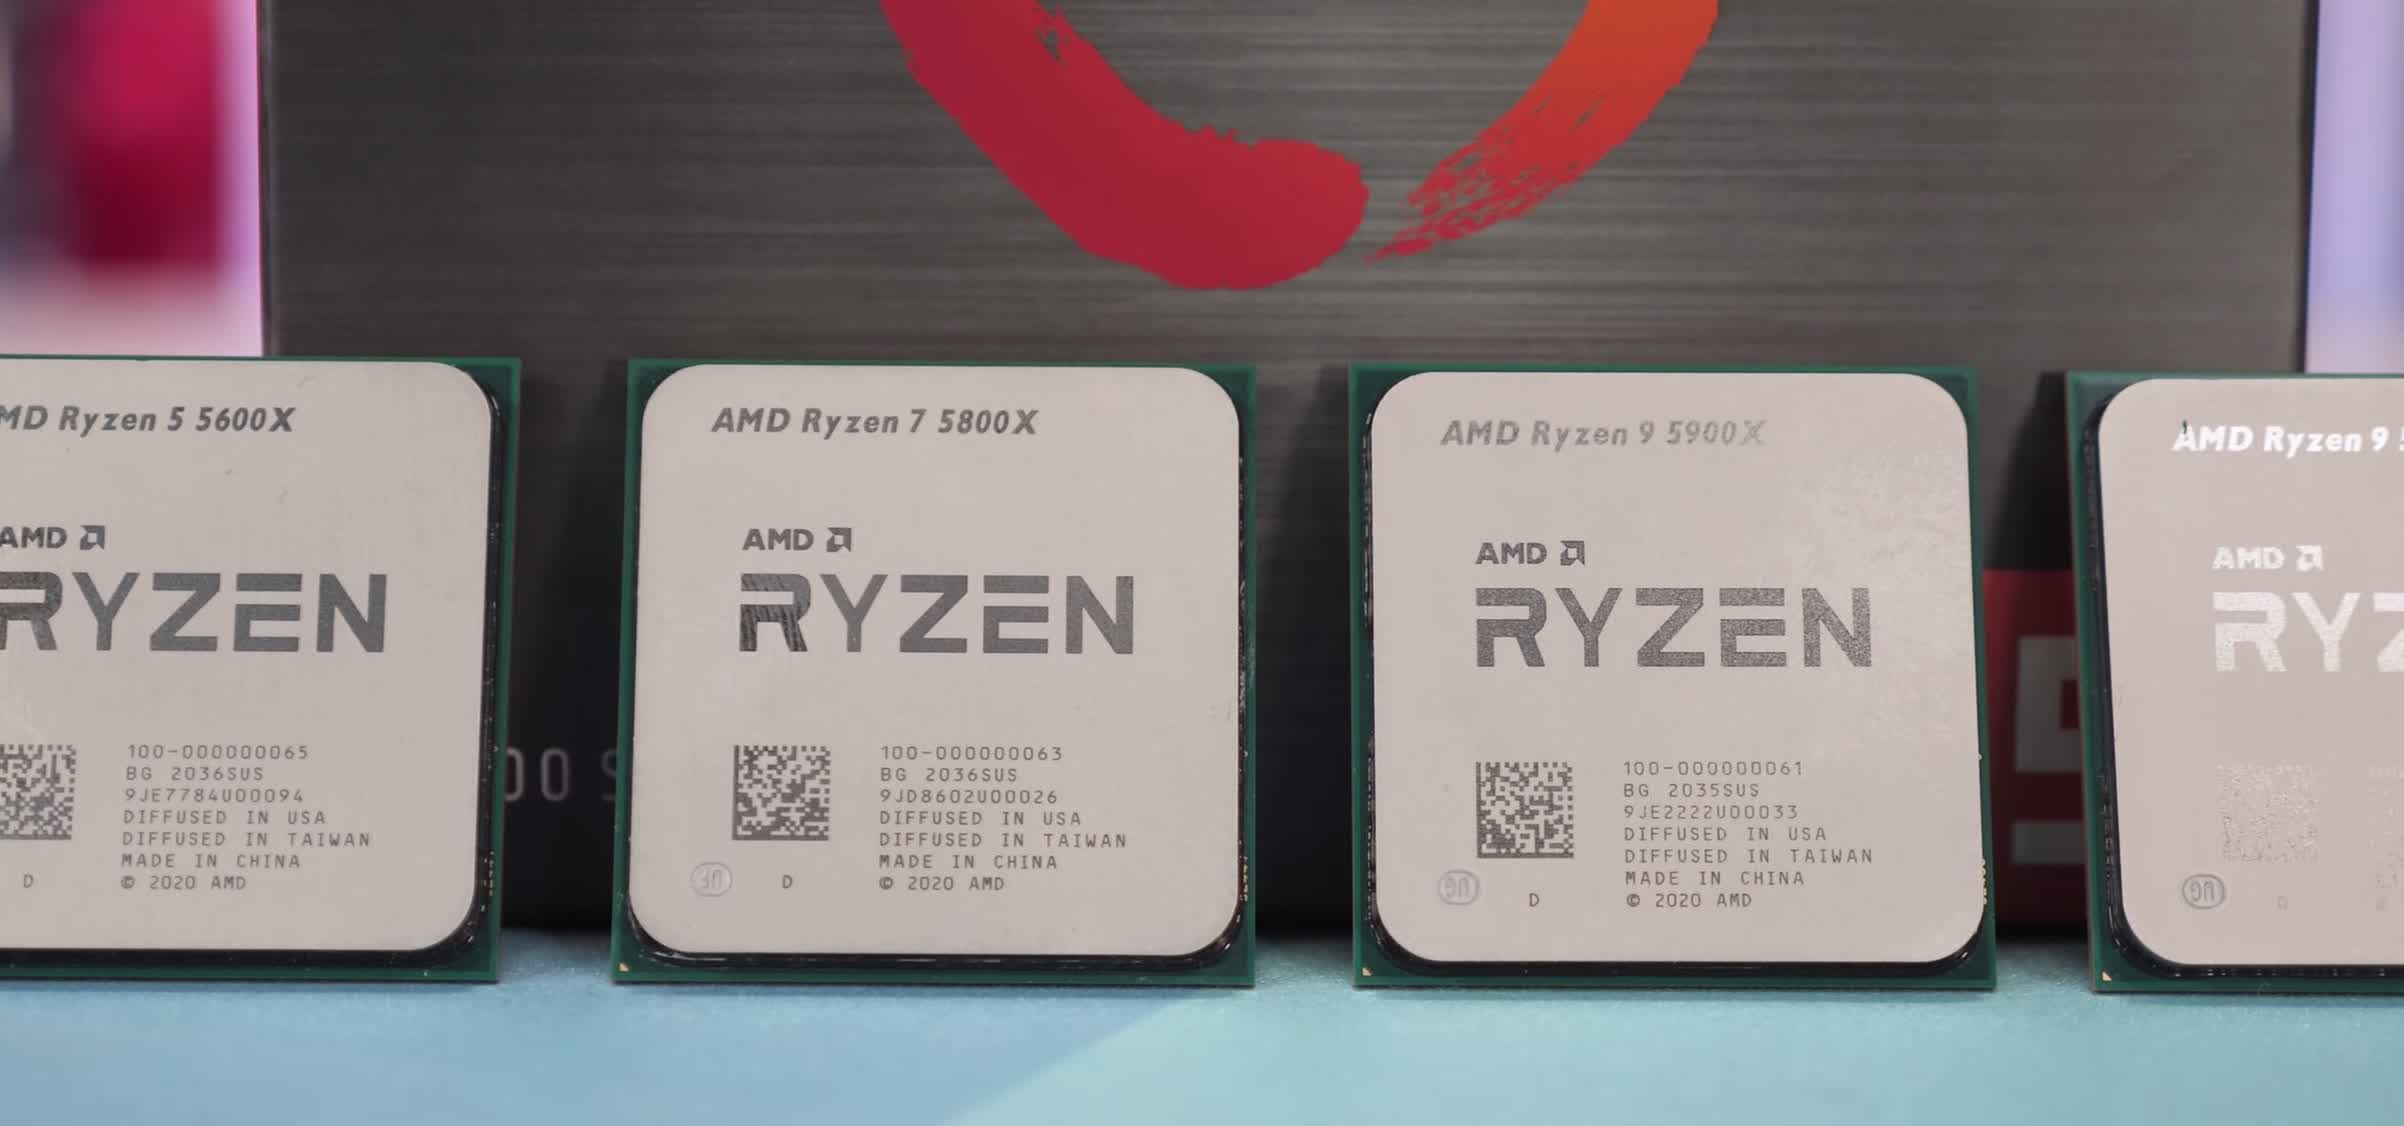 AMD Ryzen 7 5800X Review: 8-Core Battle vs. 10700K | TechSpot Forums